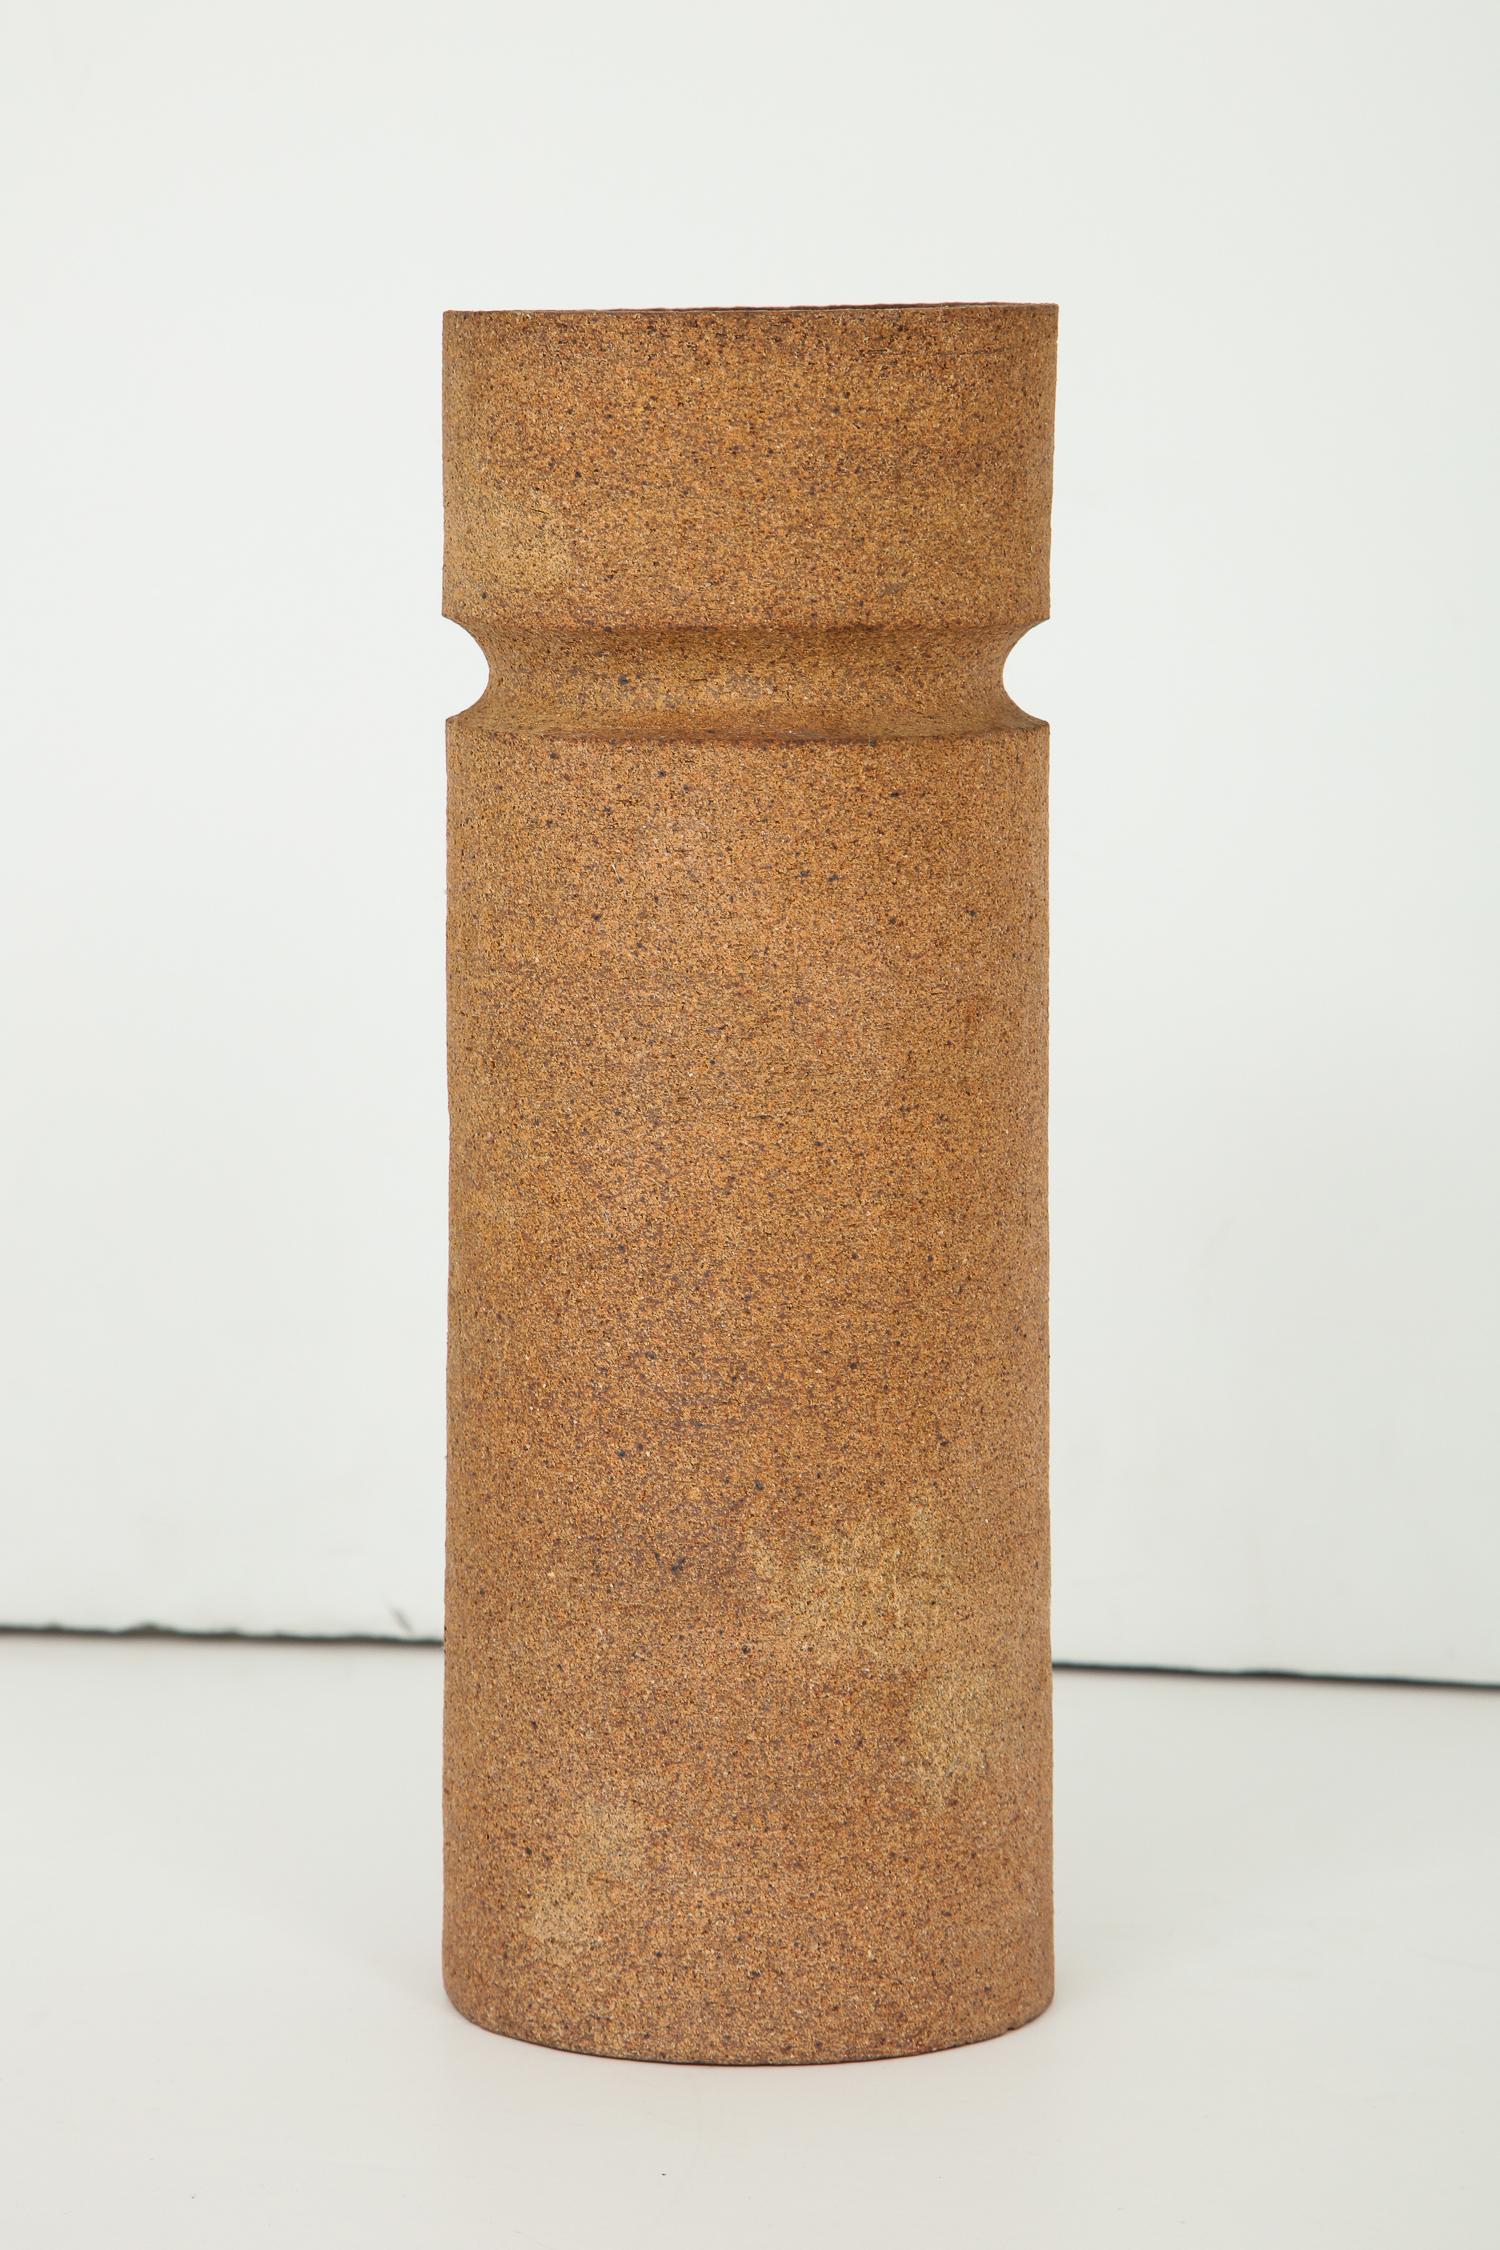 Architektonisches zylindrisches Gefäß mit eingeschnittenem Rand, außen unglasiert, innen teilweise glasiert, von dem Madrider Keramikkünstler Antonio Salvador Orodea, Direktor der Fabrik ASO. Teil einer Sammlung im Zusammenhang mit der